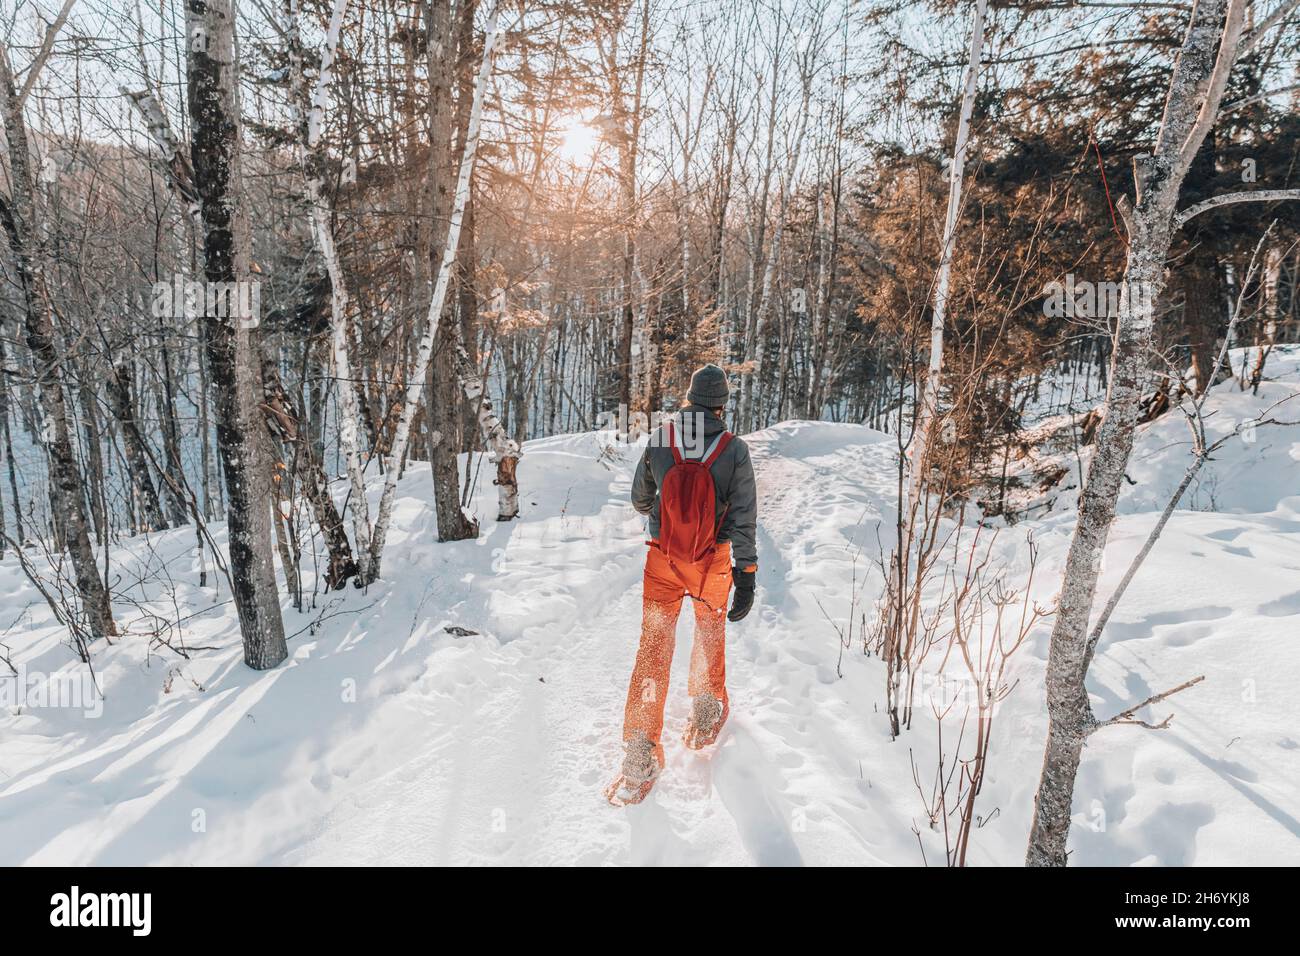 Raquette sur les gens dans la forêt d'hiver avec des arbres couverts de neige le jour de neige.Homme en randonnée dans la neige randonnée en raquettes vie saine actif en plein air Banque D'Images